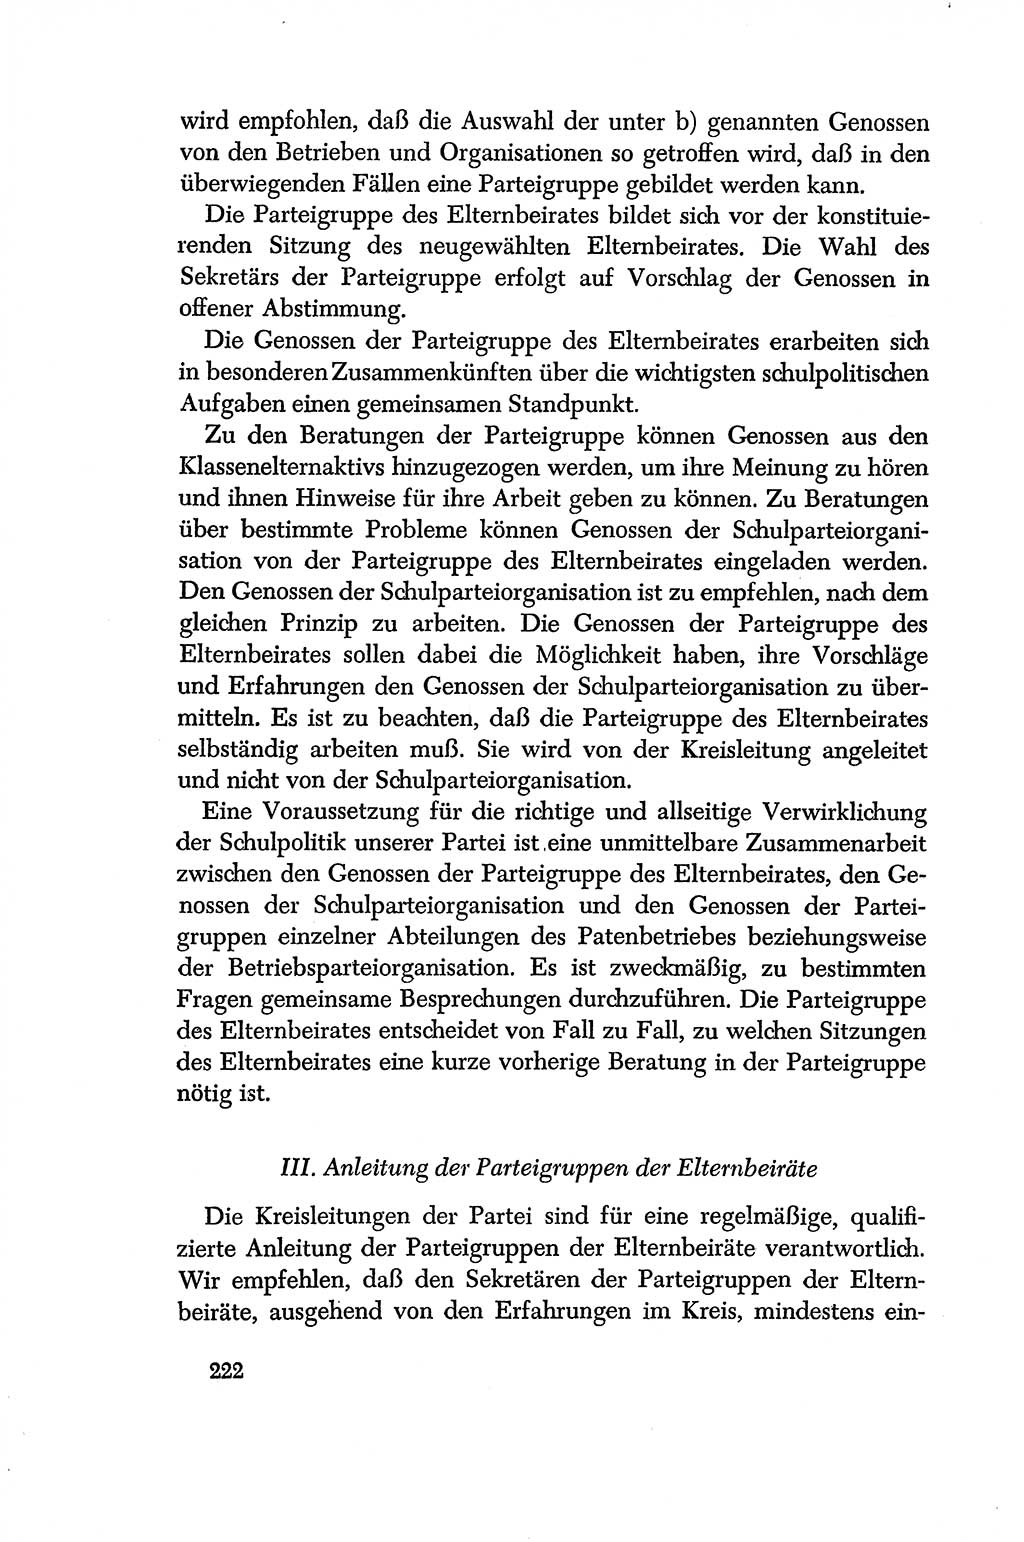 Dokumente der Sozialistischen Einheitspartei Deutschlands (SED) [Deutsche Demokratische Republik (DDR)] 1956-1957, Seite 222 (Dok. SED DDR 1956-1957, S. 222)